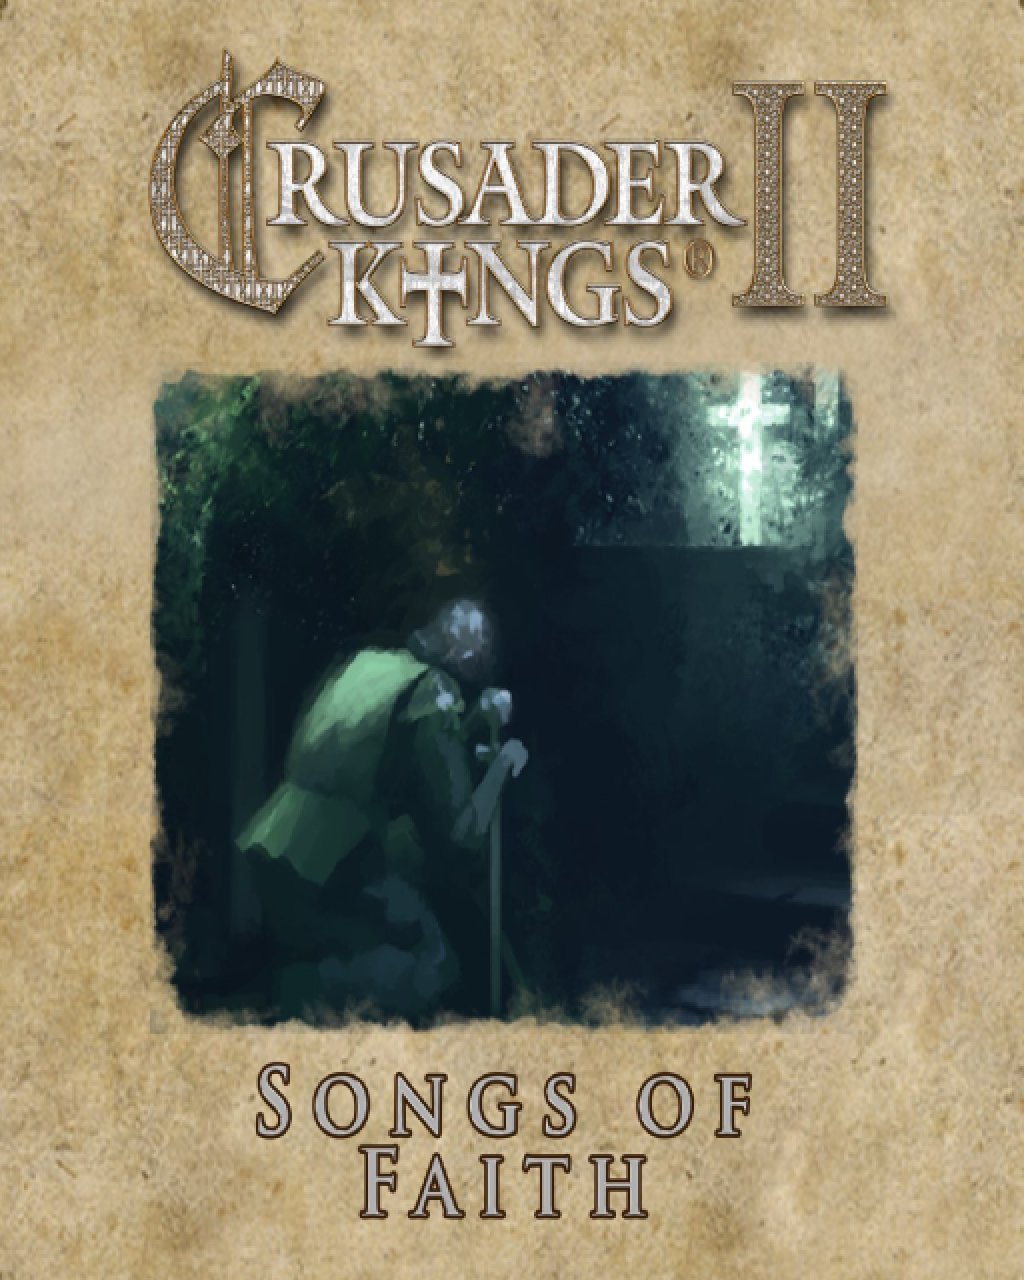 ESD Crusader Kings II Songs of Faith